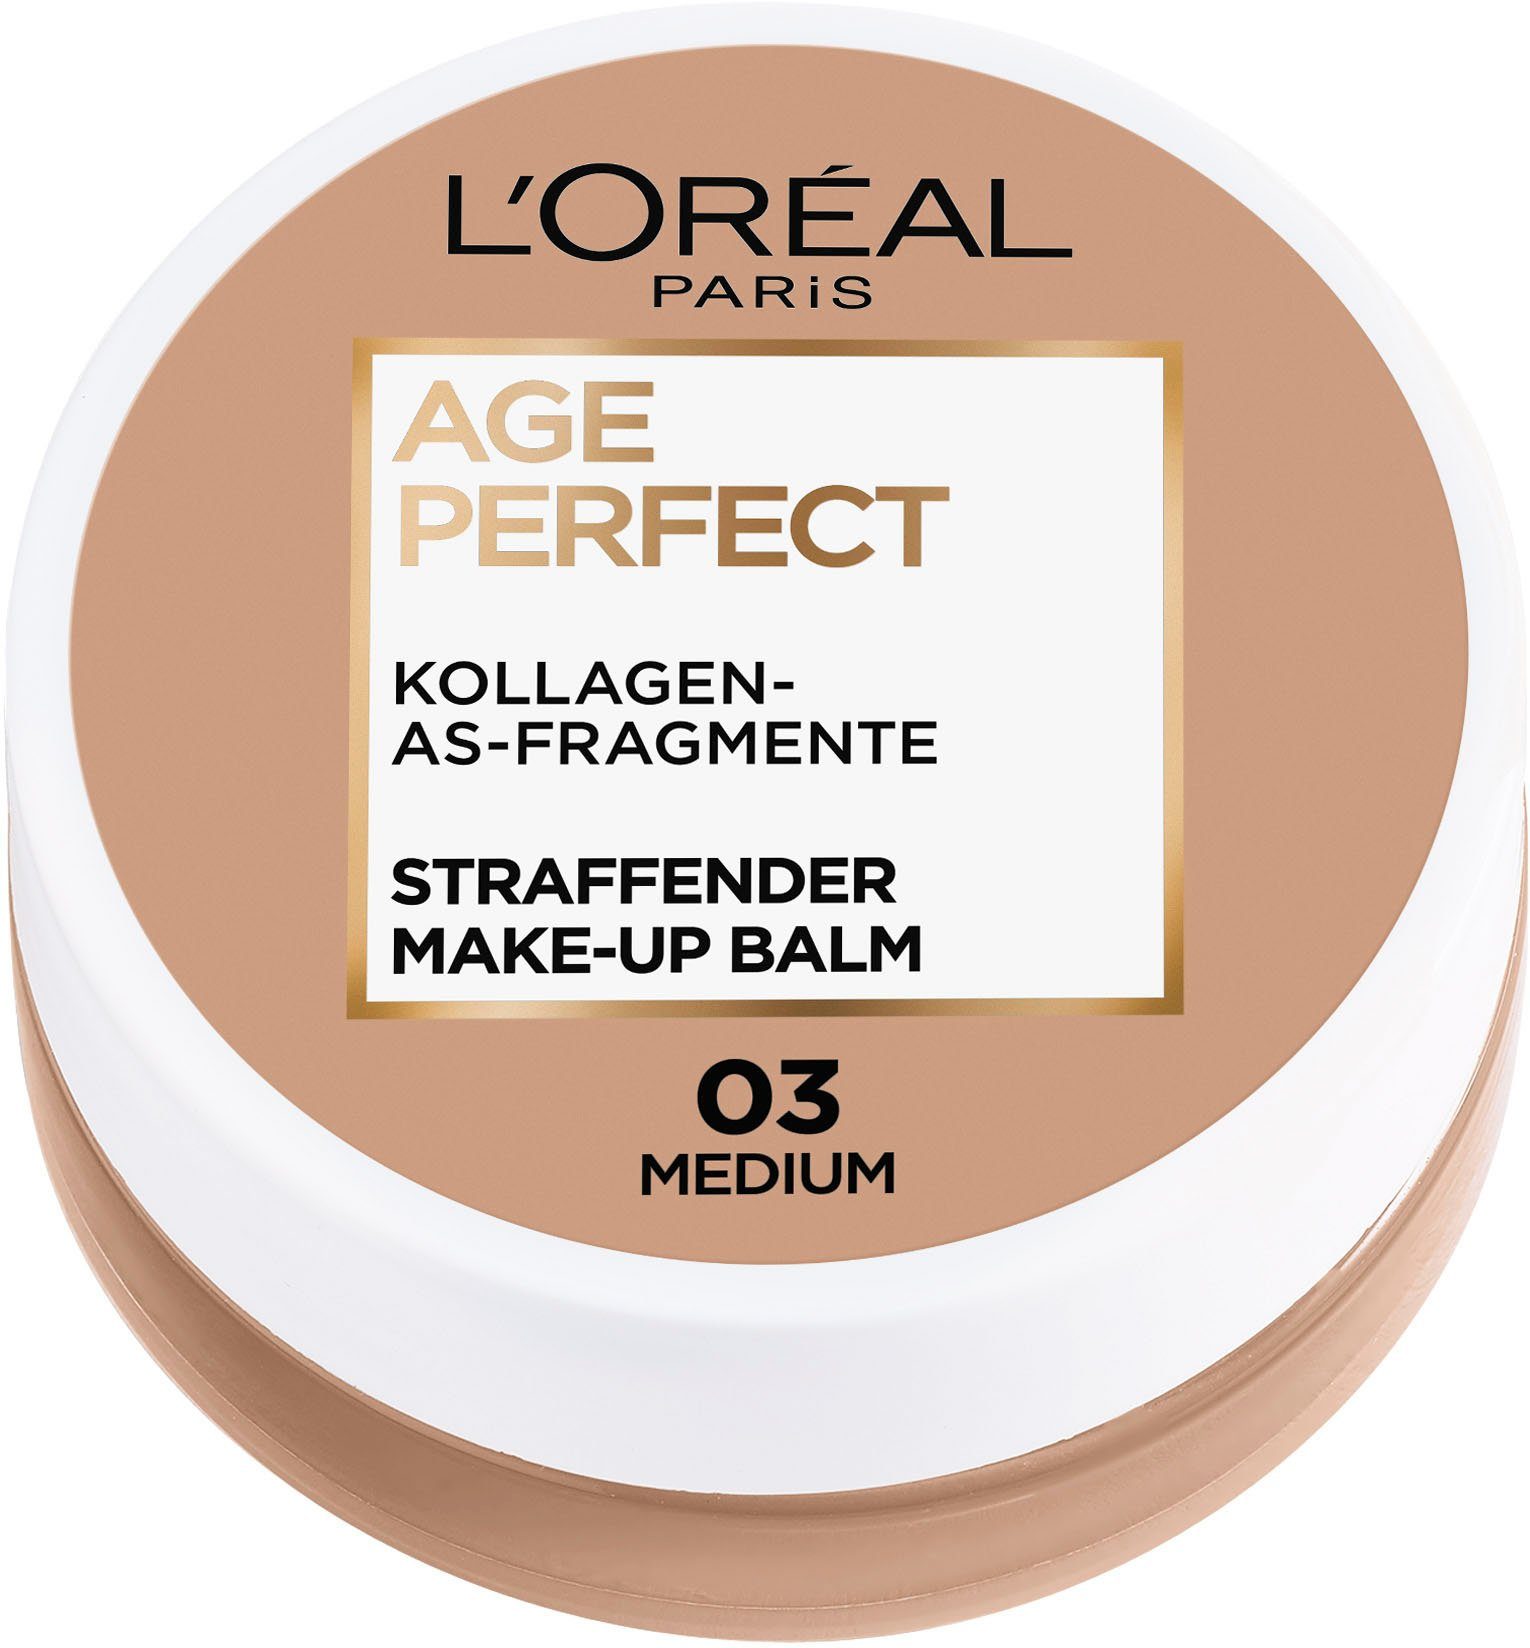 L'ORÉAL PARIS Foundation Age Perfect Balm Make-up 03 Medium Perfect Balm, Age Make-up